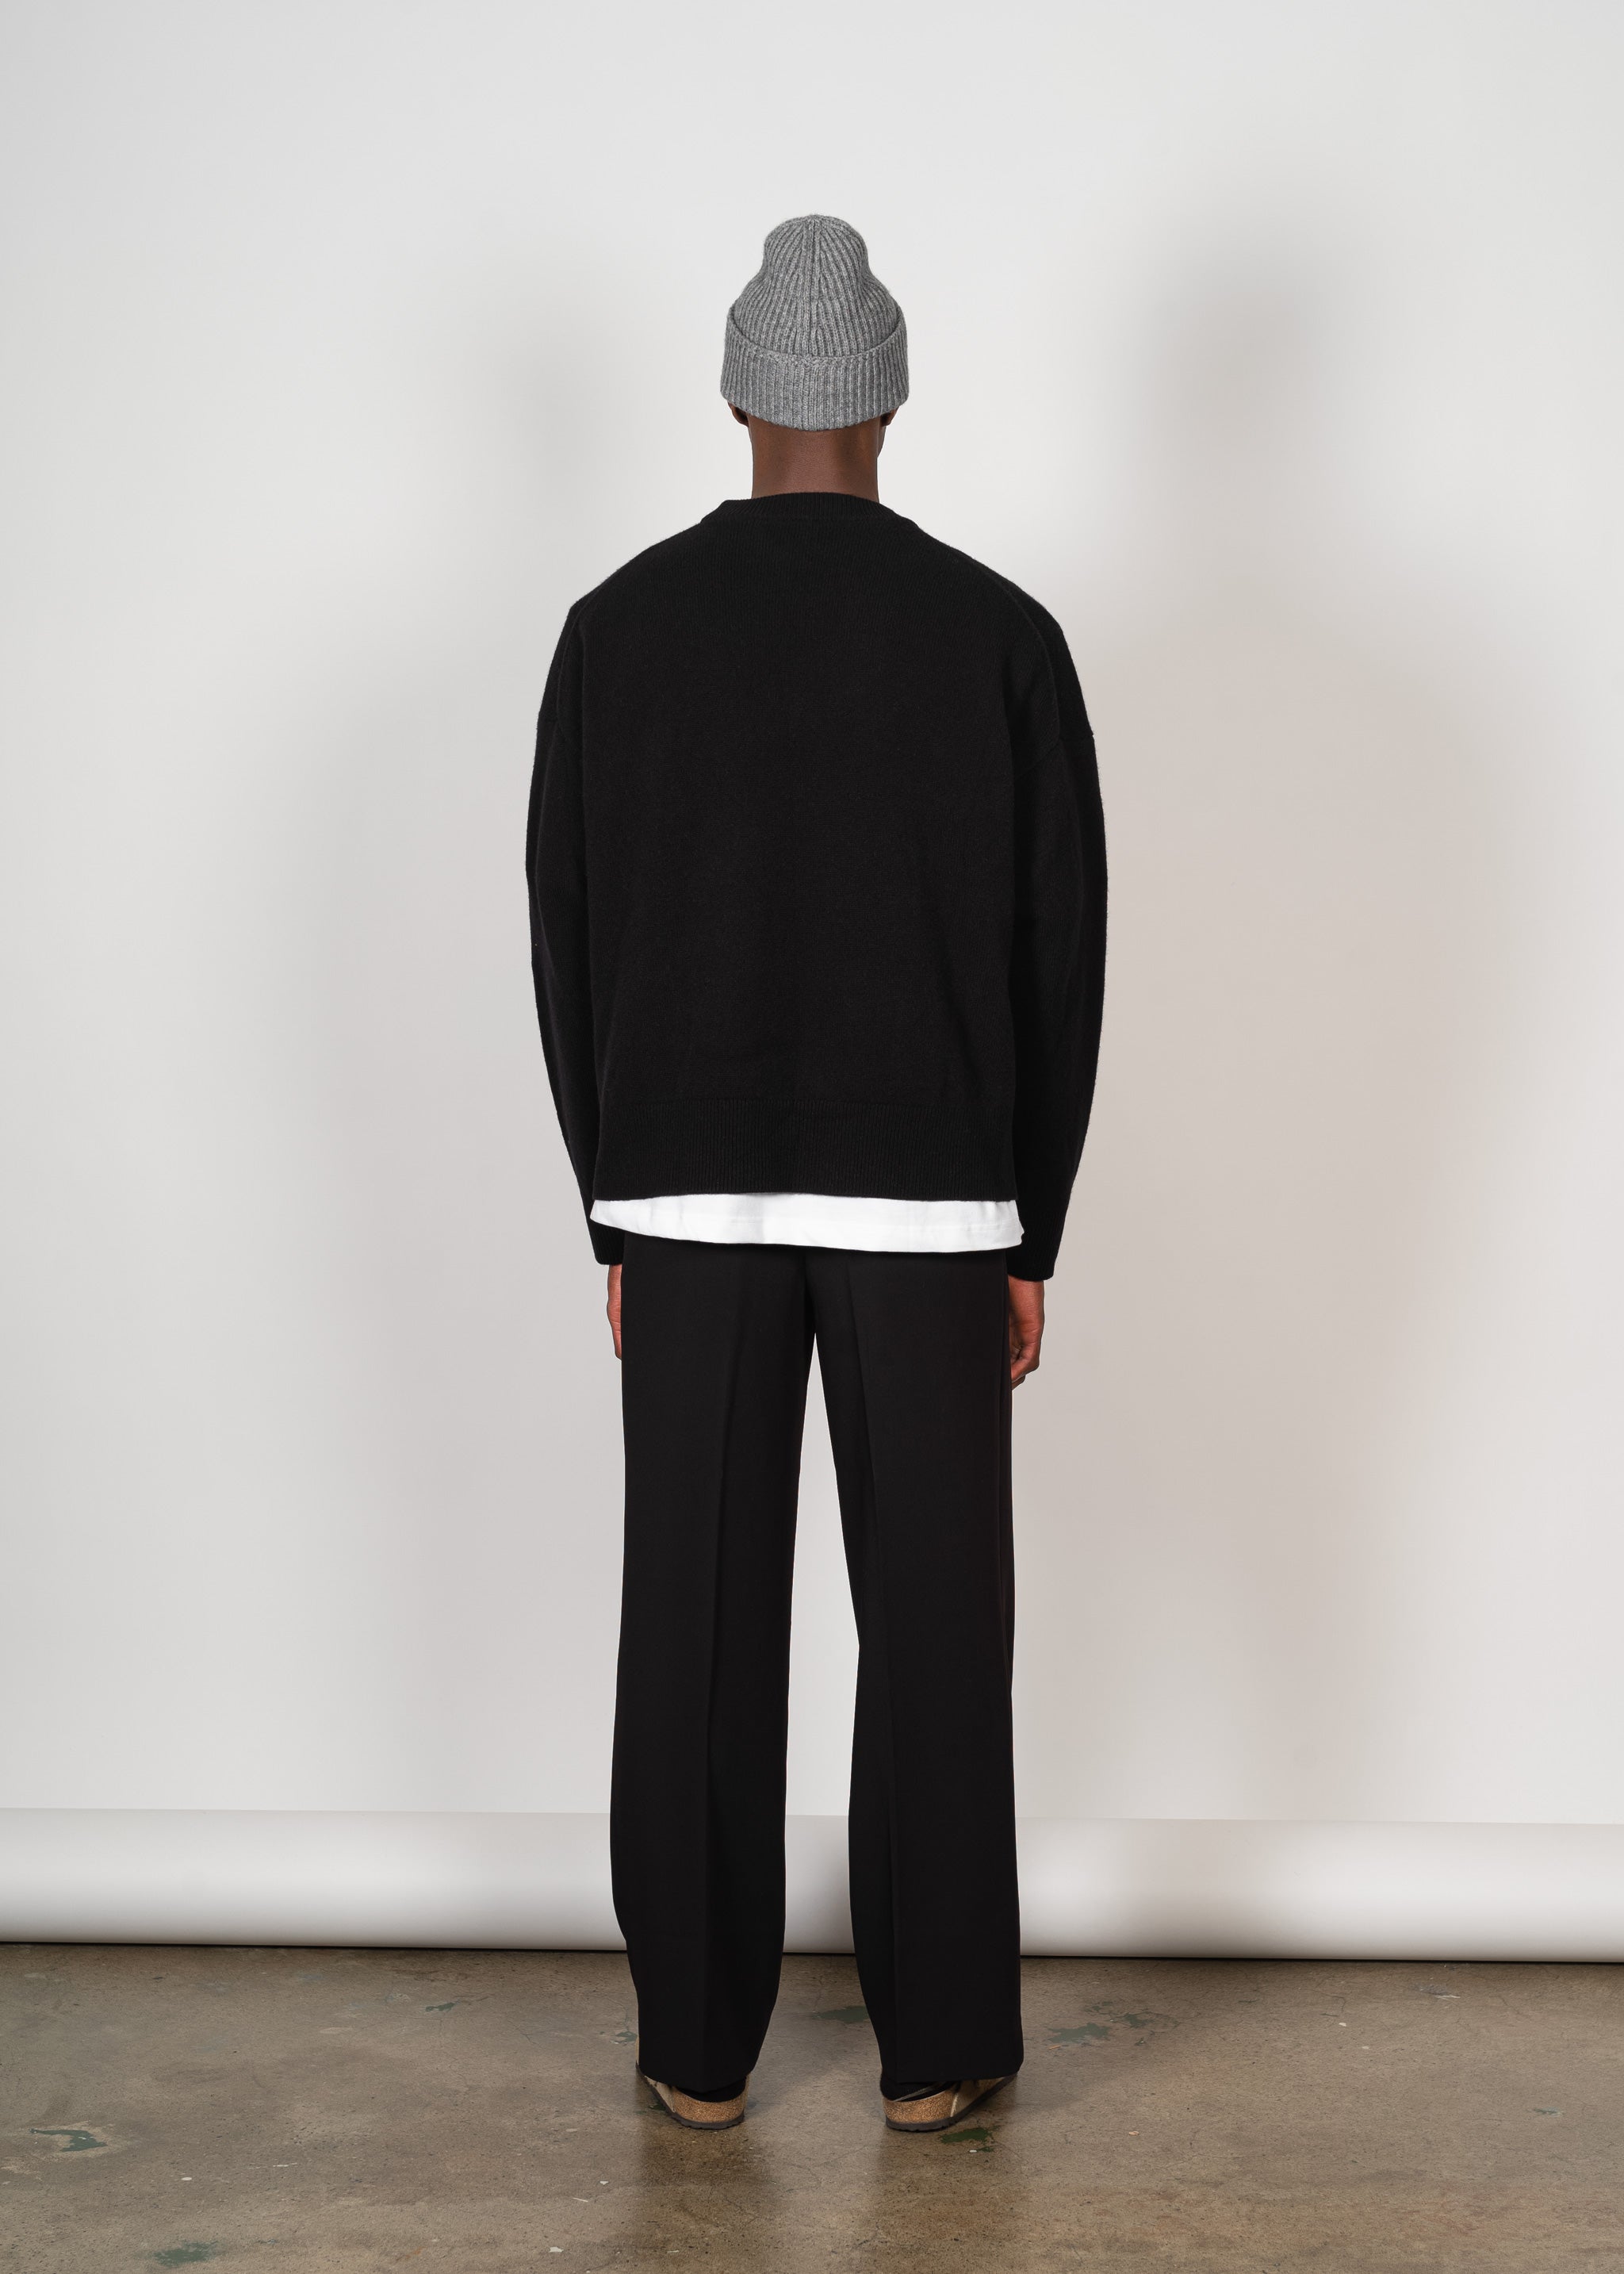 Yacaia Y-0008 Oversized Cashmere Blend Sweater - Black